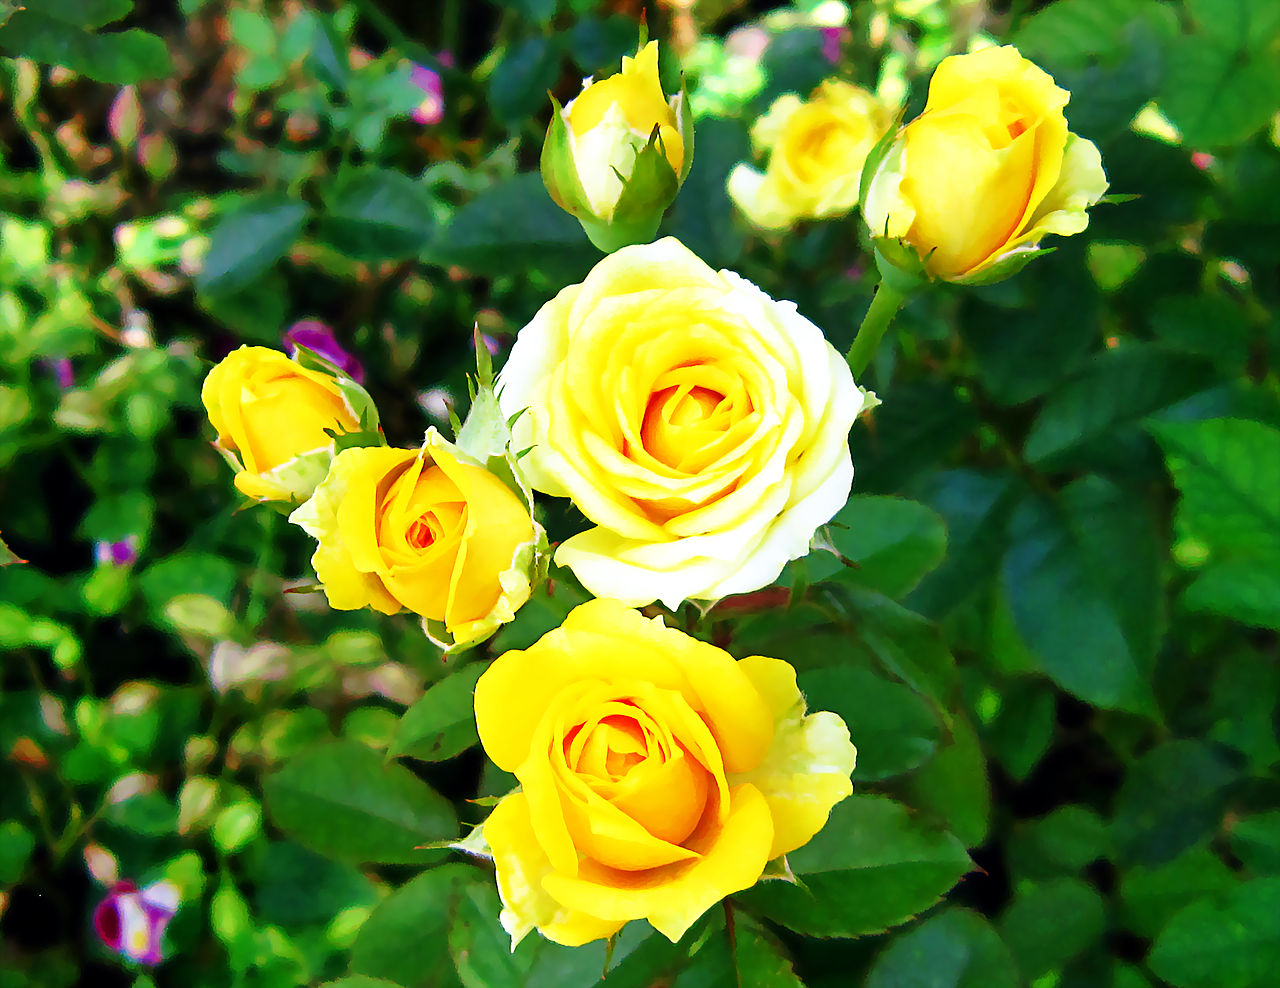 Hoa hồng vàng - một biểu tượng của tình yêu và sự giàu có. Đừng bỏ lỡ cơ hội chiêm ngưỡng sự đẹp tuyệt vời của hoa hồng vàng trong bức tranh đẹp như mơ ngay bây giờ!